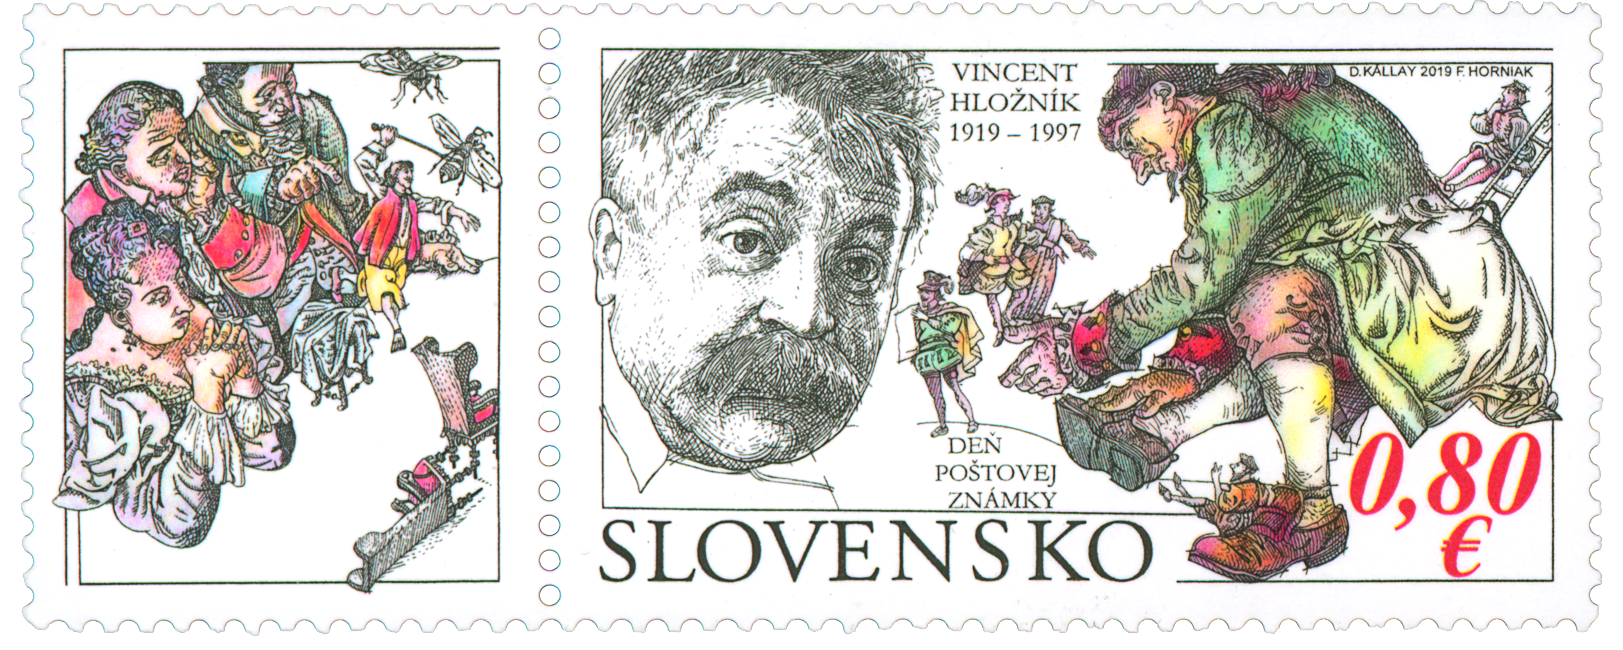 704 - Deň poštovej známky: Vincent Hložník  (1919 – 1997)